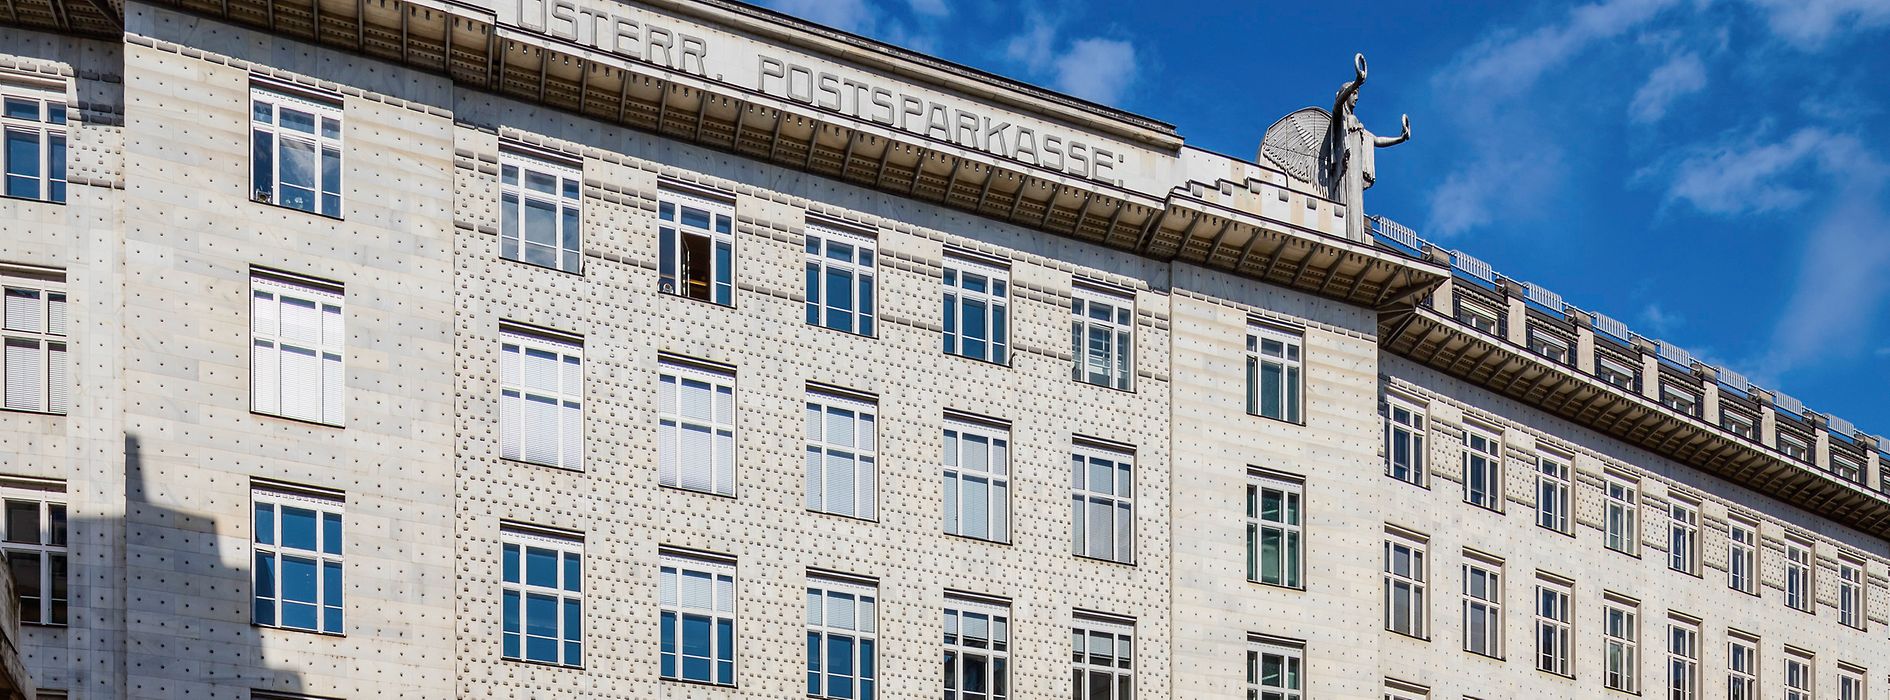 Budova Rakouské poštovní spořitelny od Otto Wagnera